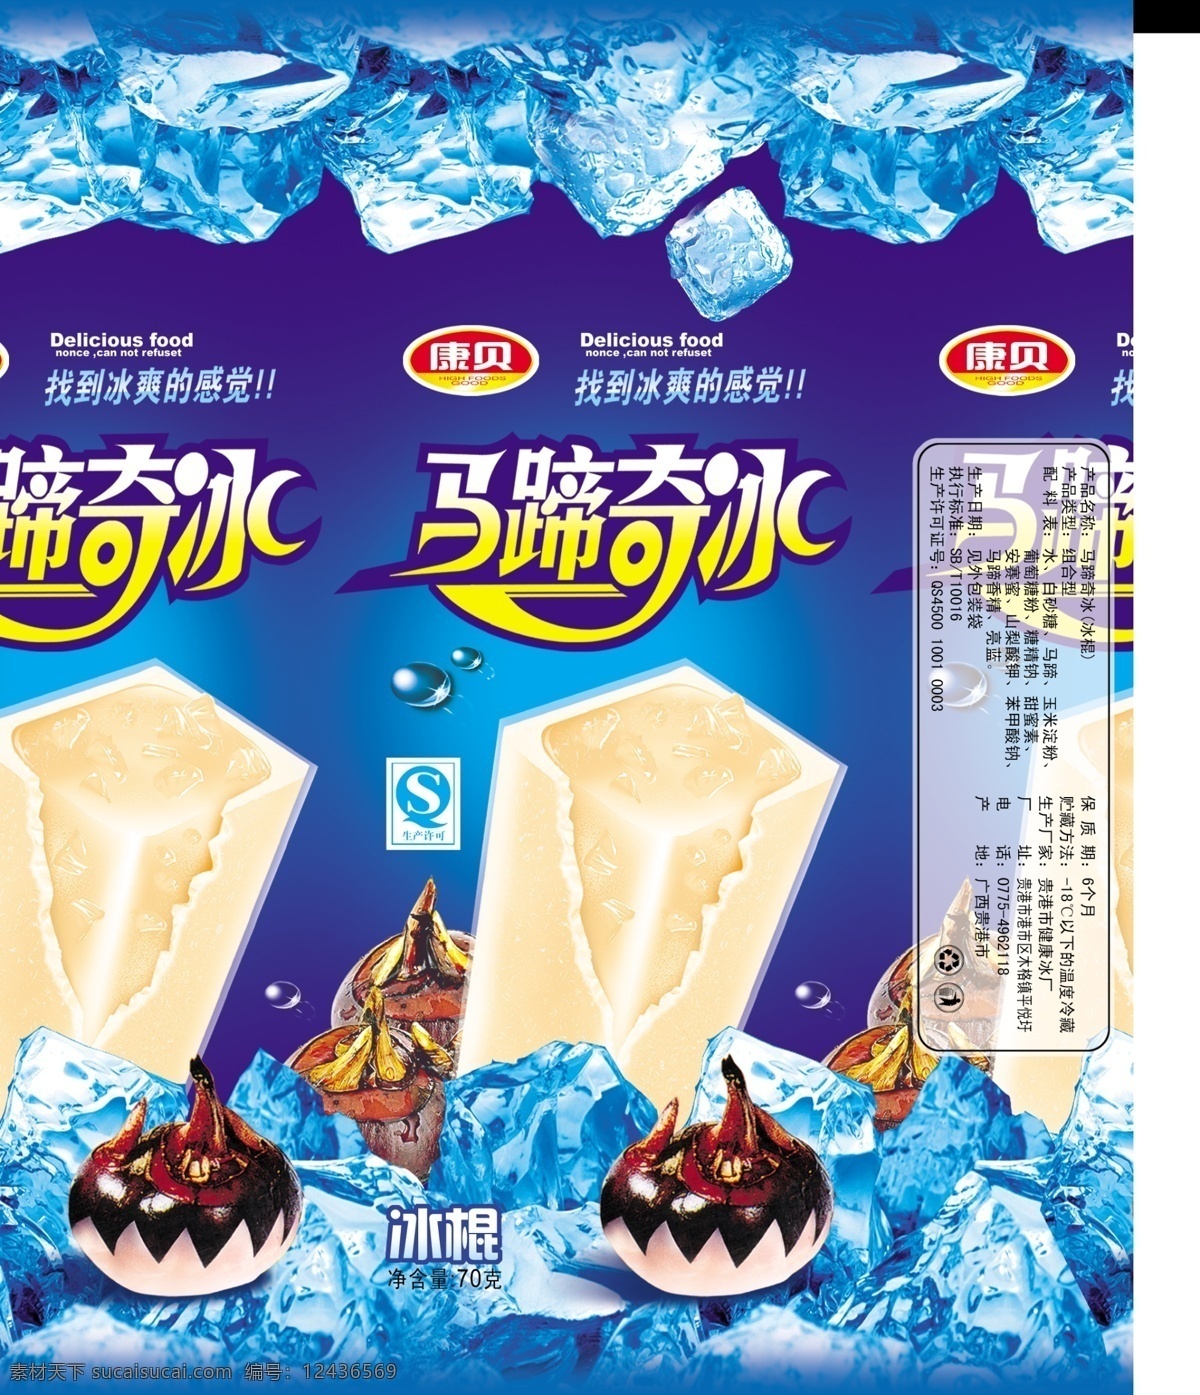 马蹄奇冰 马蹄 冰淇淋 冰块 雪棒 雪条 包装设计 蓝色